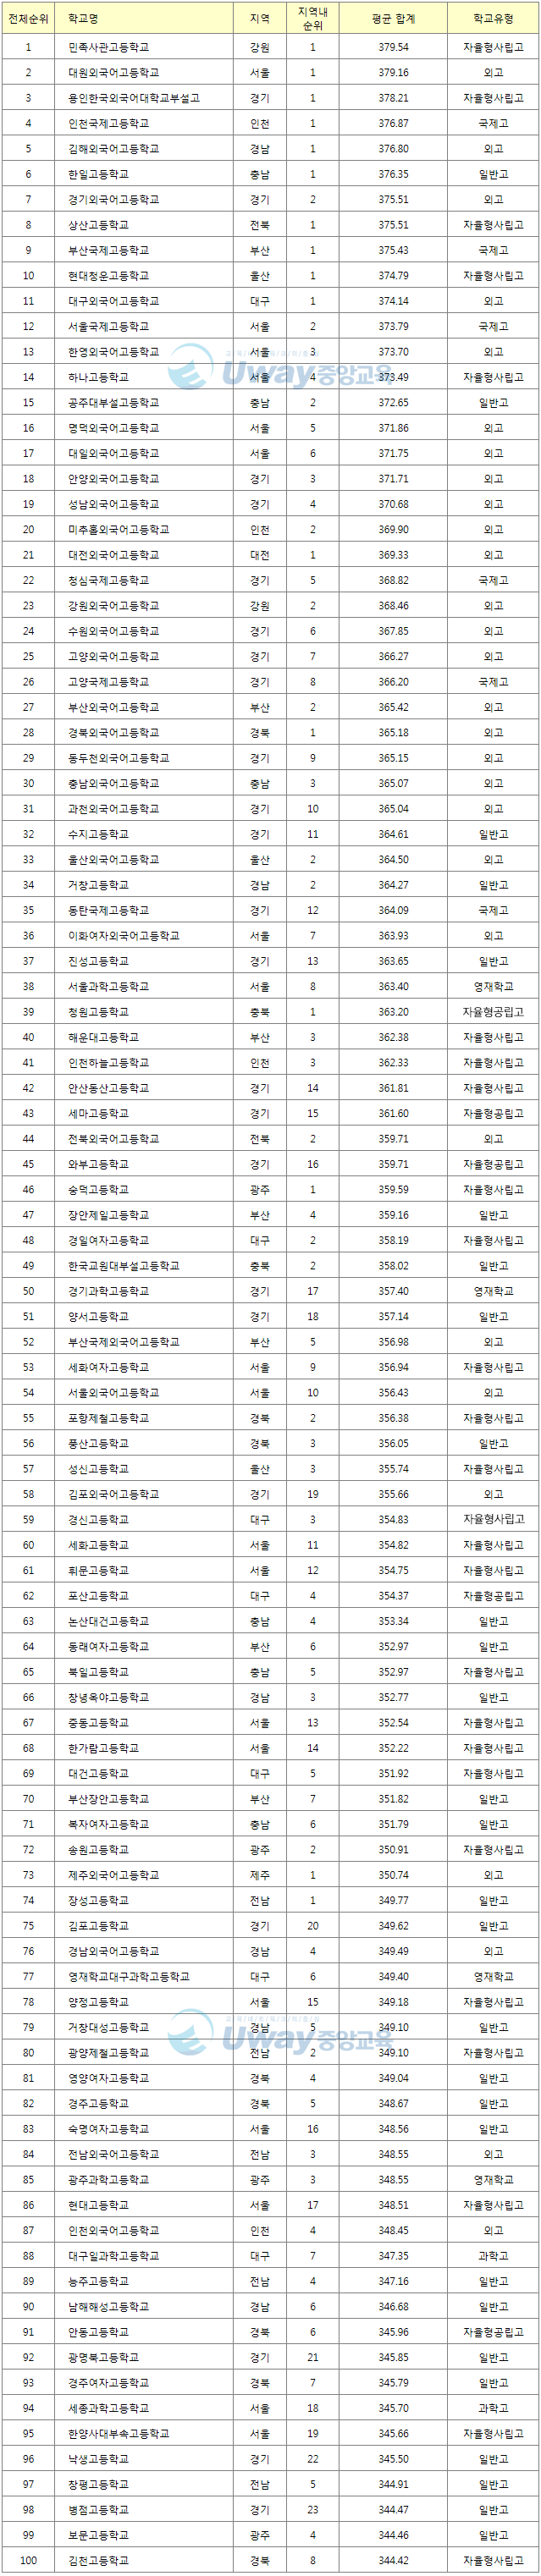 2015학년도 수능 전국 고등학교 순위 TOP 100.gif